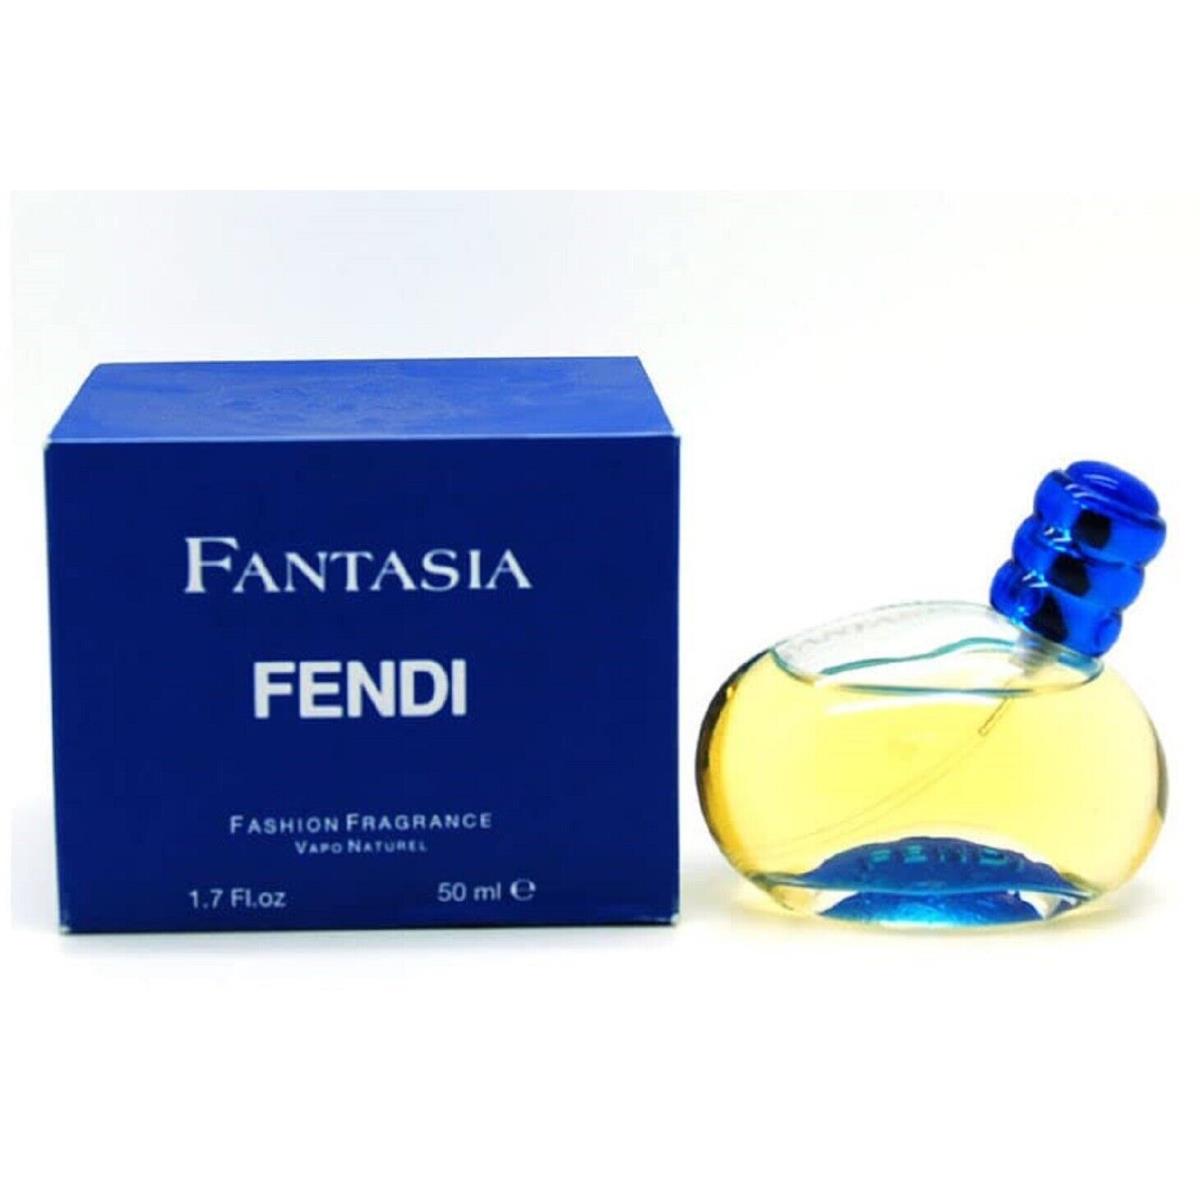 Fantasia Fendi 1.7 oz / 50 ml Eau de Toilette Edt Women Perfume Spray